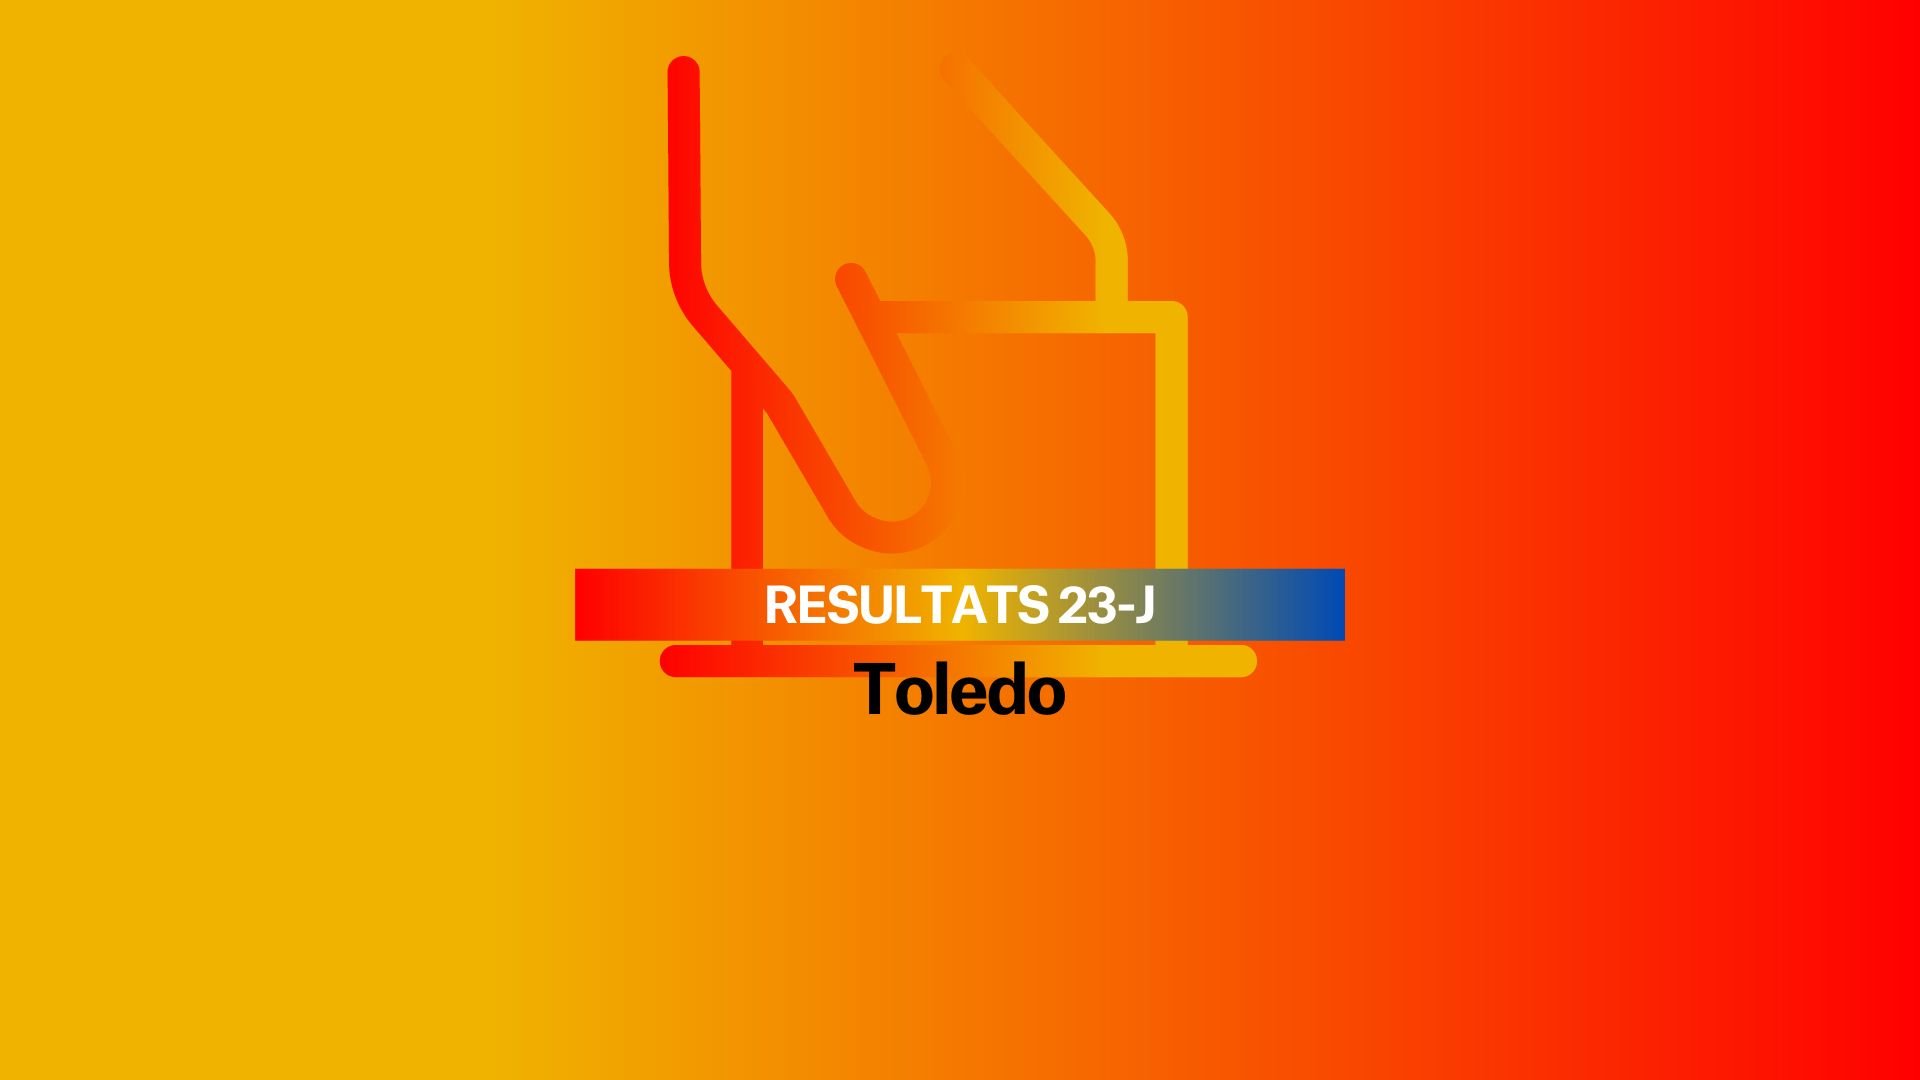 Resultados Elecciones Generales 2023 en Toledo: El PP es el partido más votado